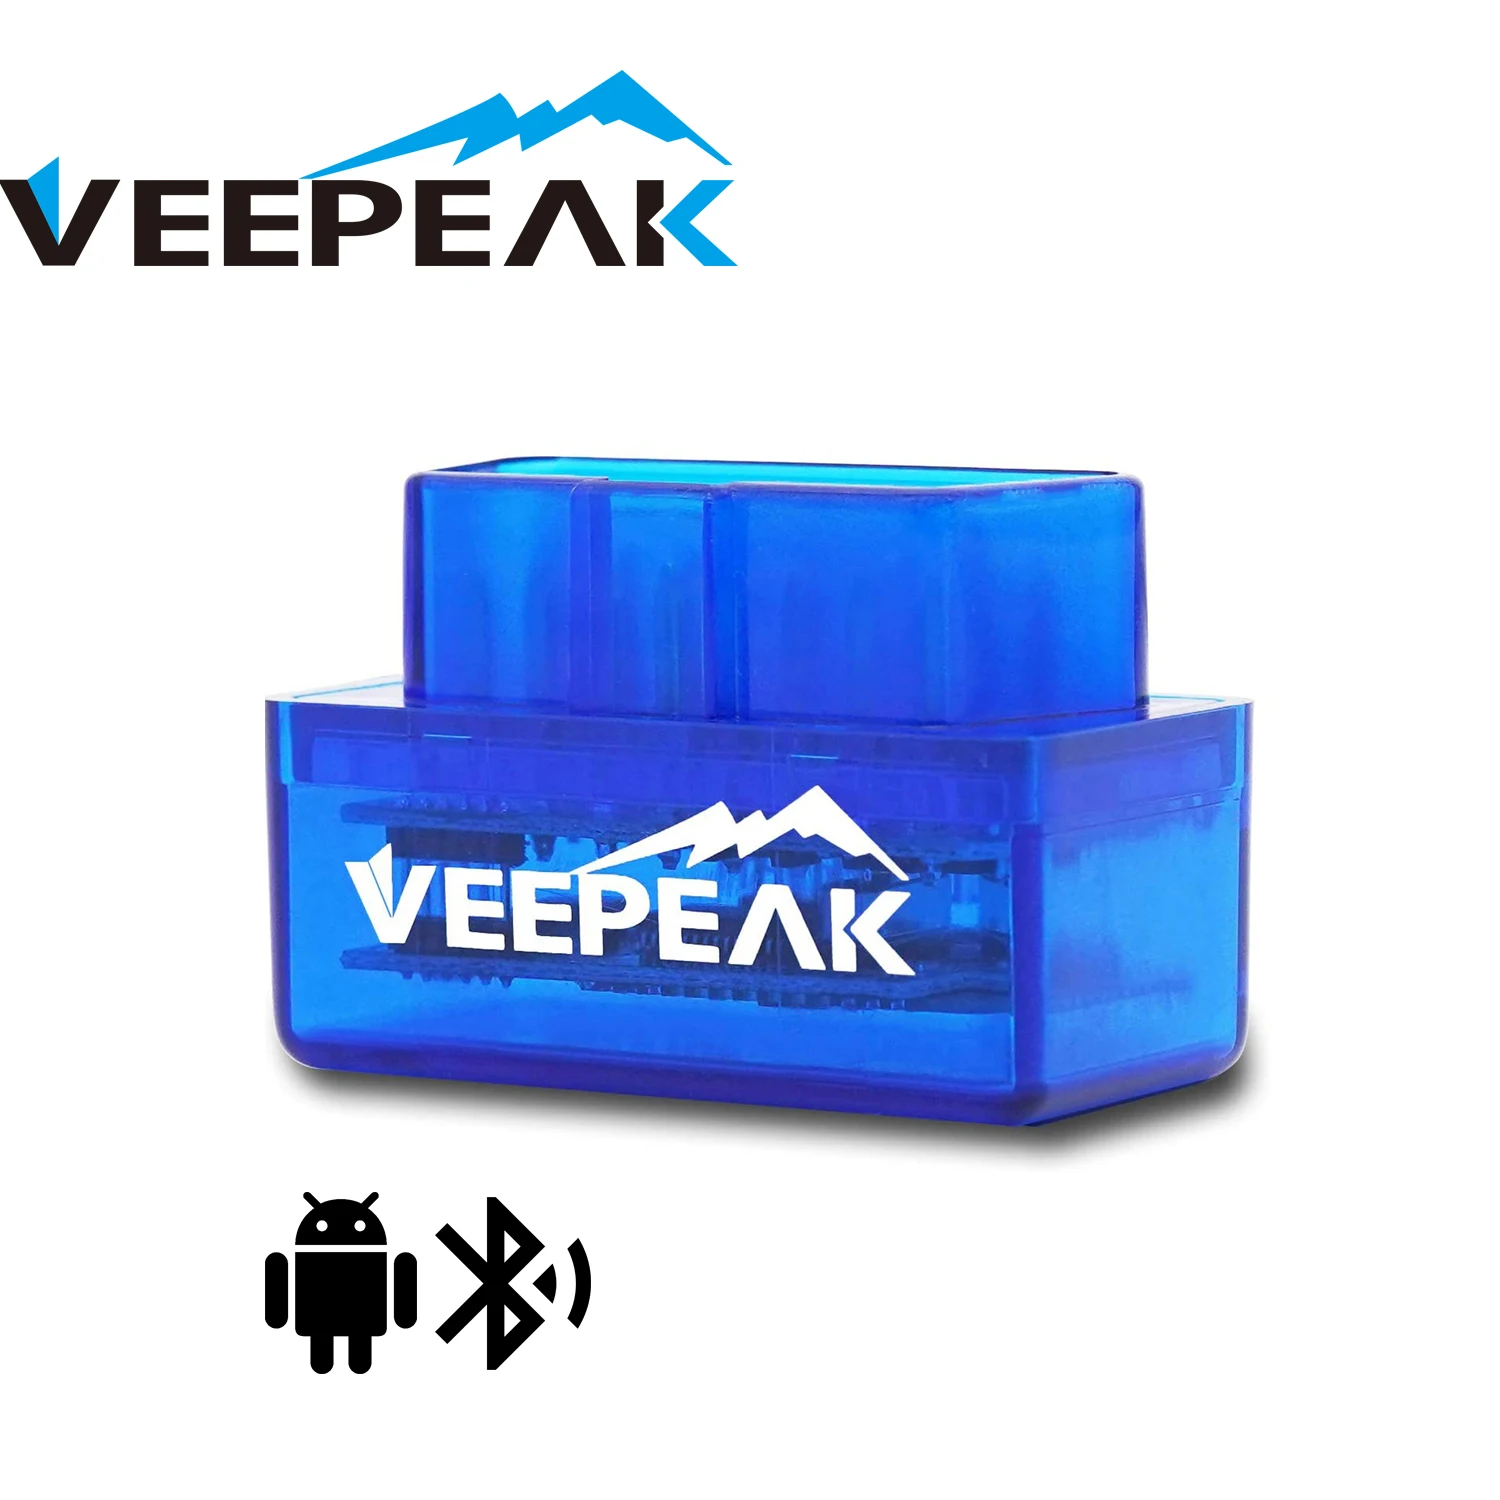 Veepeak Mini Bluetooth OBD2 сканер для Android, автомобильный OBD II диагностический сканер, диагностический прибор для проверки двигателя, считыватель кодов с поддержкой Torque